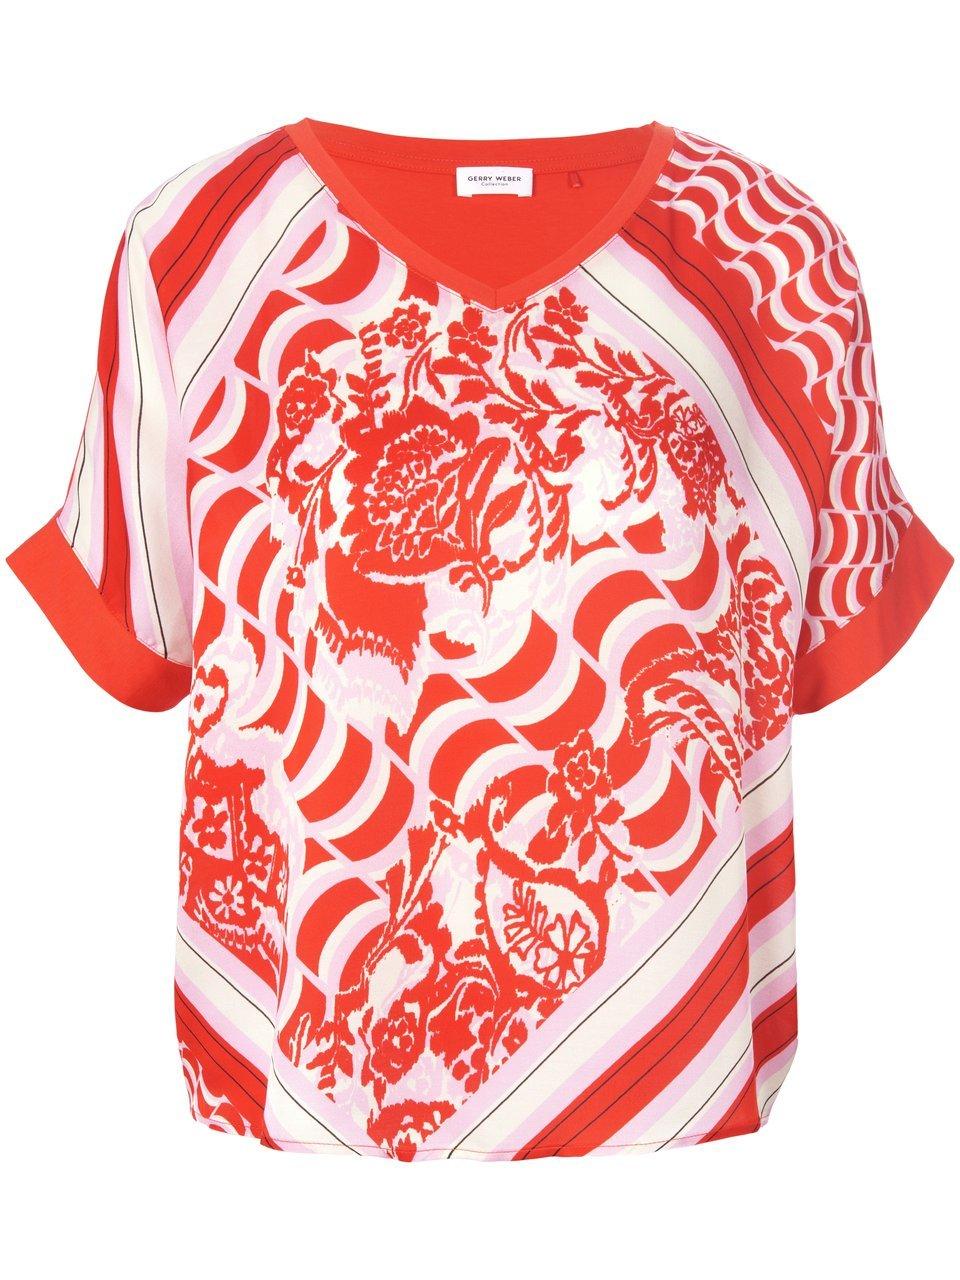 GERRY WEBER Dames Shirt met halflange mouwen Lila/Pink/Rot/Orange Druck-44